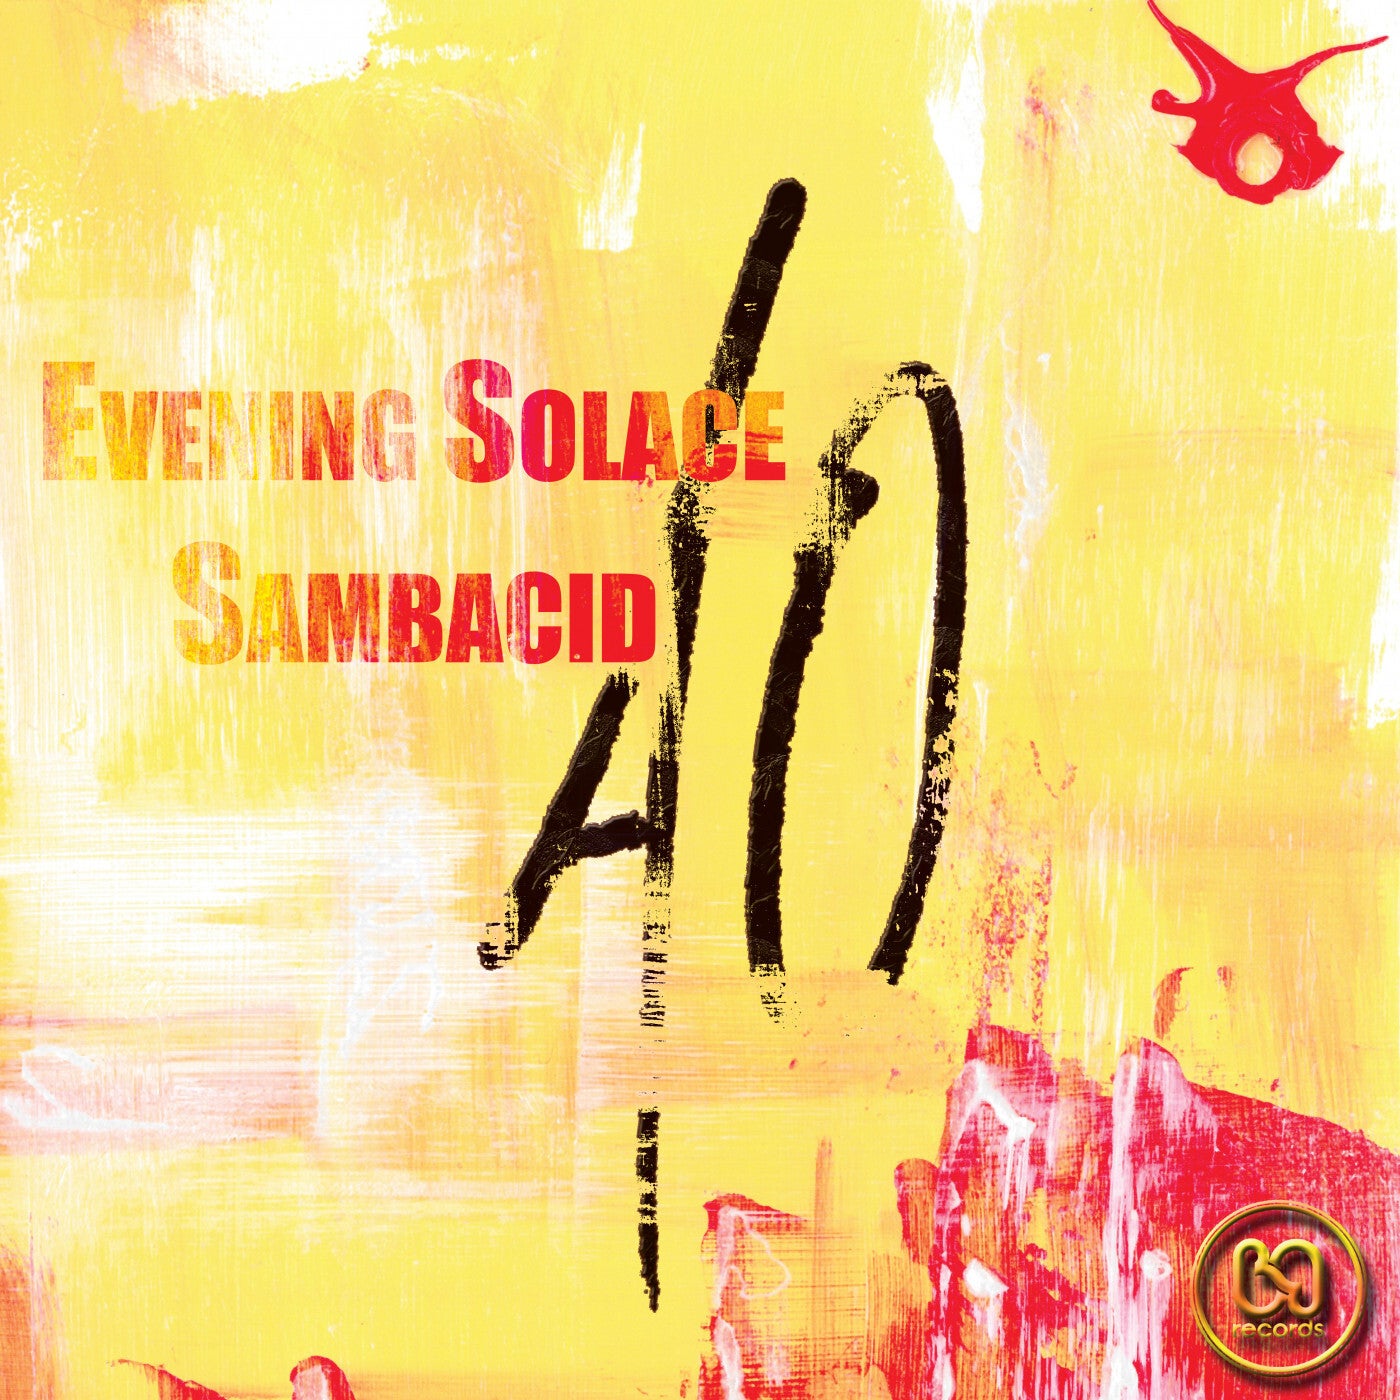 Evening Solace / Sambacid